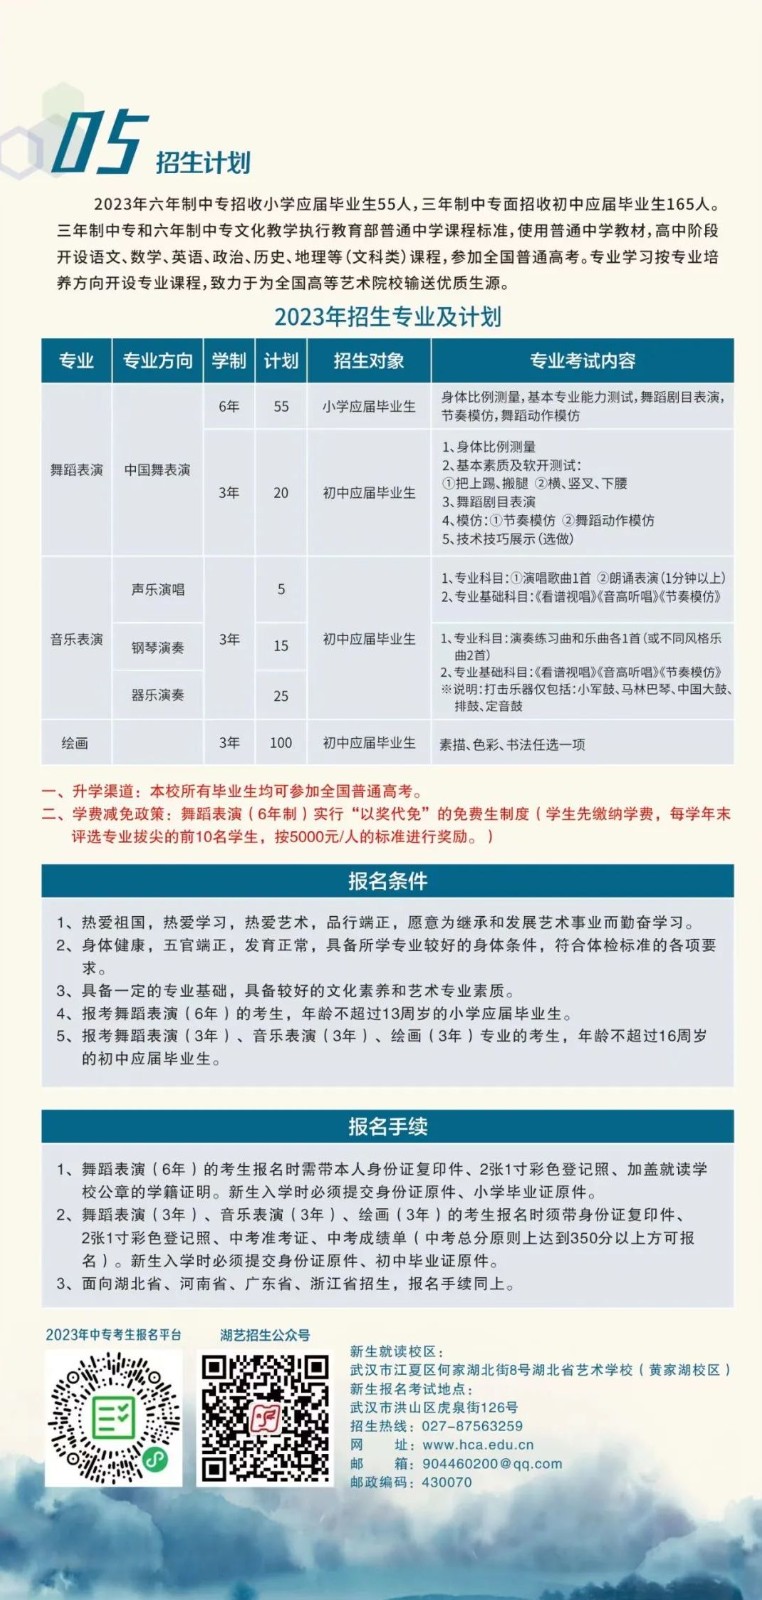 2023年湖北省藝術學校舞蹈表演等專業招生簡章、招生計劃、報名條件、報名考試時間